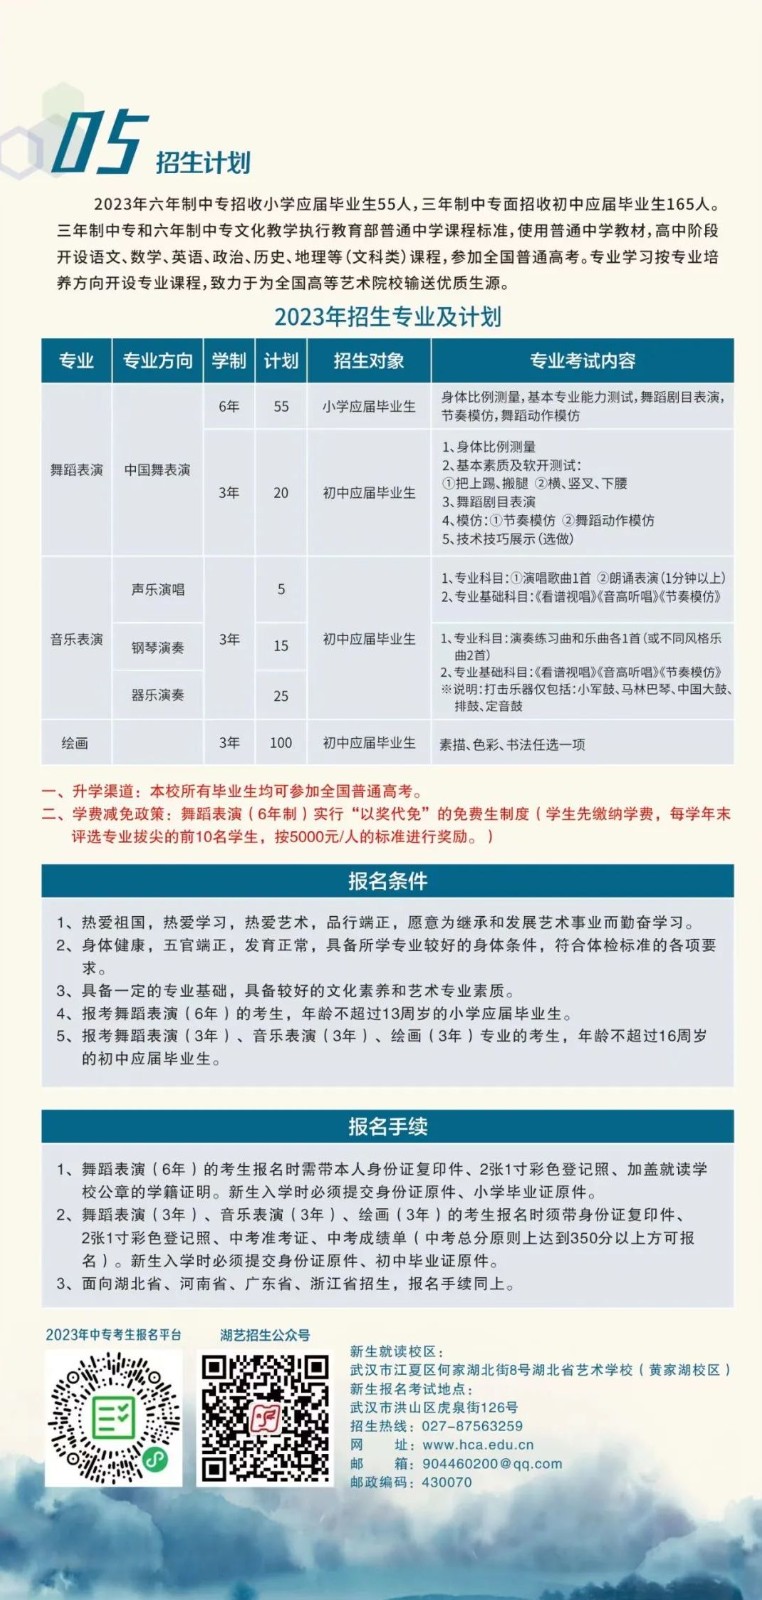 2023年湖北省藝術學校舞蹈表演等專業招生簡章、招生計劃、報名條件、報名考試時間